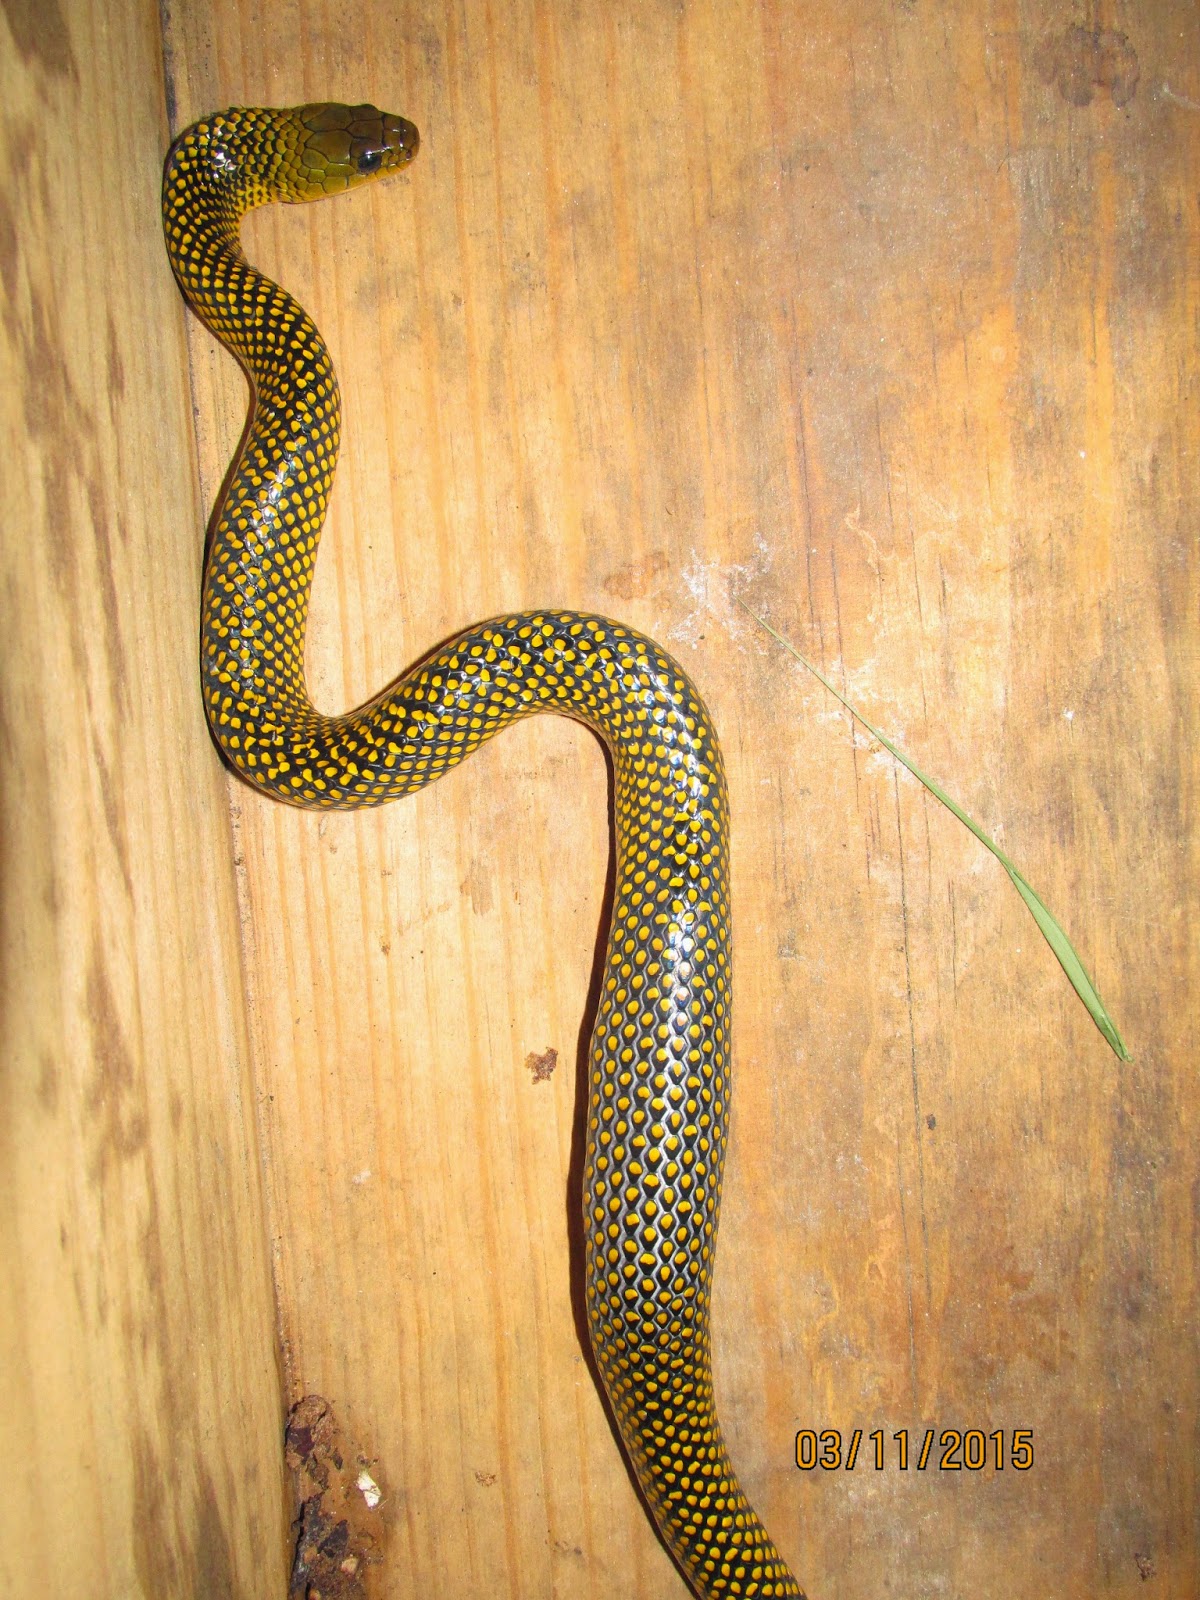 Cobras Nativas de Santa Catarina 6